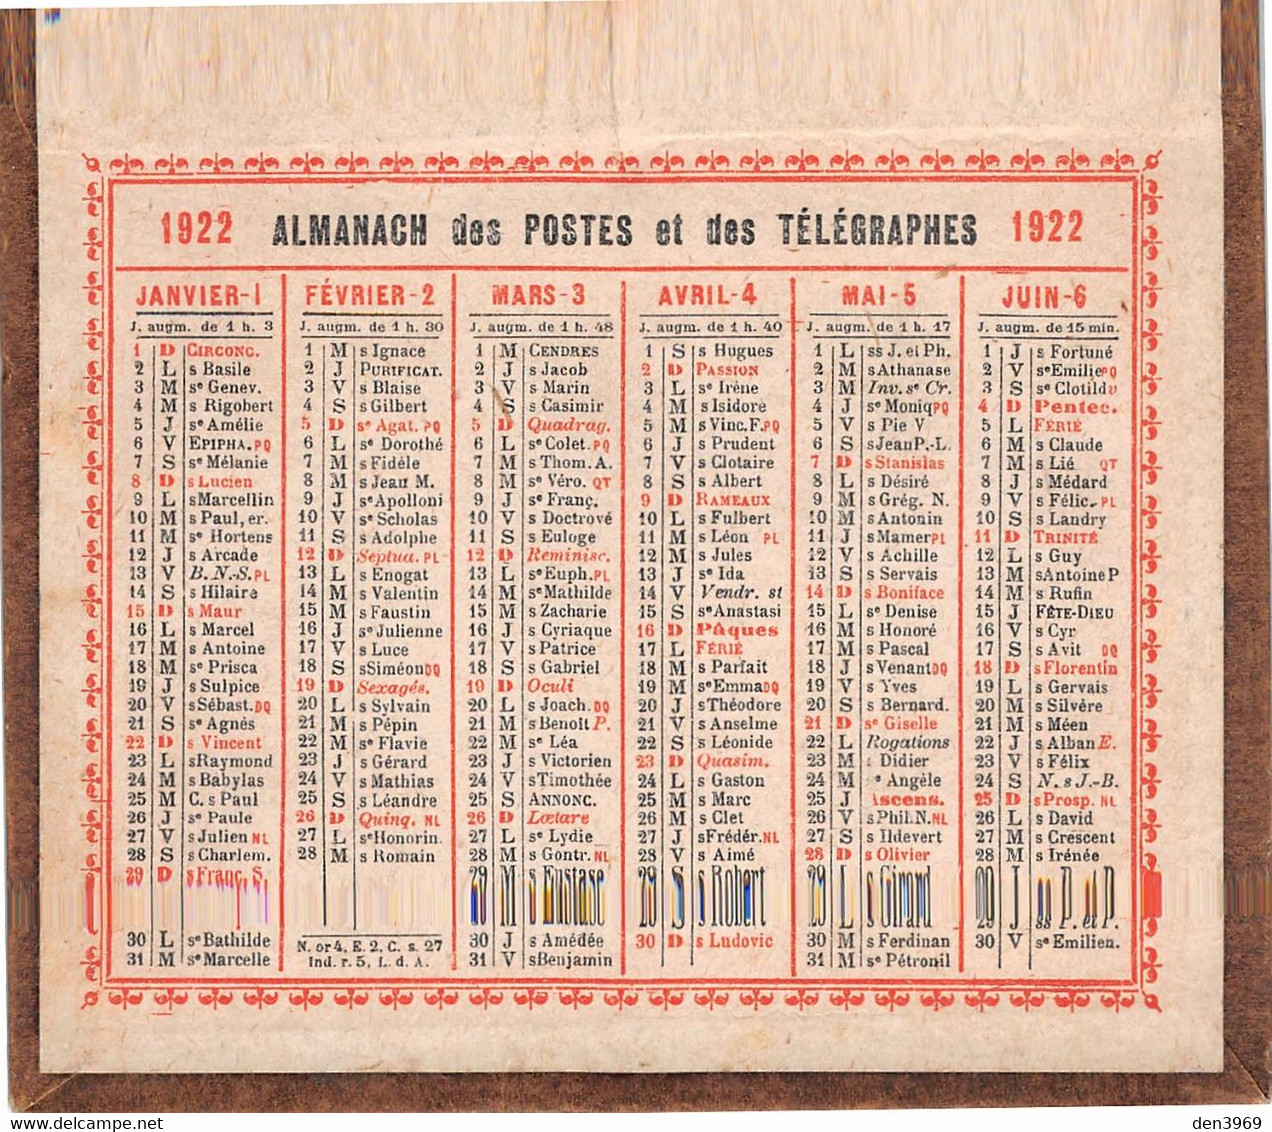 Small : 1921-40 - CALENDRIER 1922 sur carton fort - Almanach des Postes et  des Télégraphes